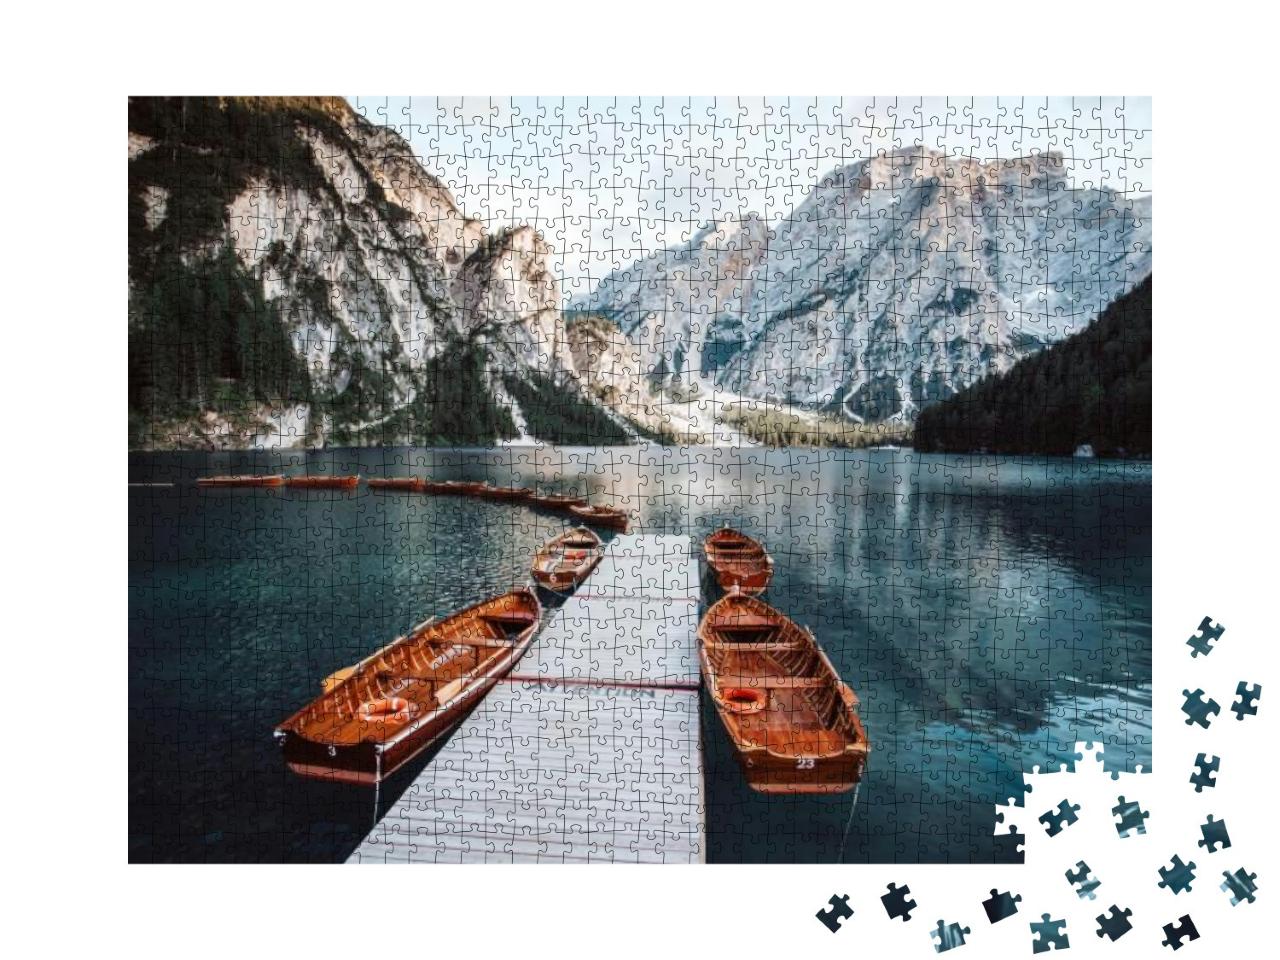 Puzzle 1000 Teile „Pragser Wildsee bei Sonnenuntergang, Dolomiten, Südtirol, Italien“